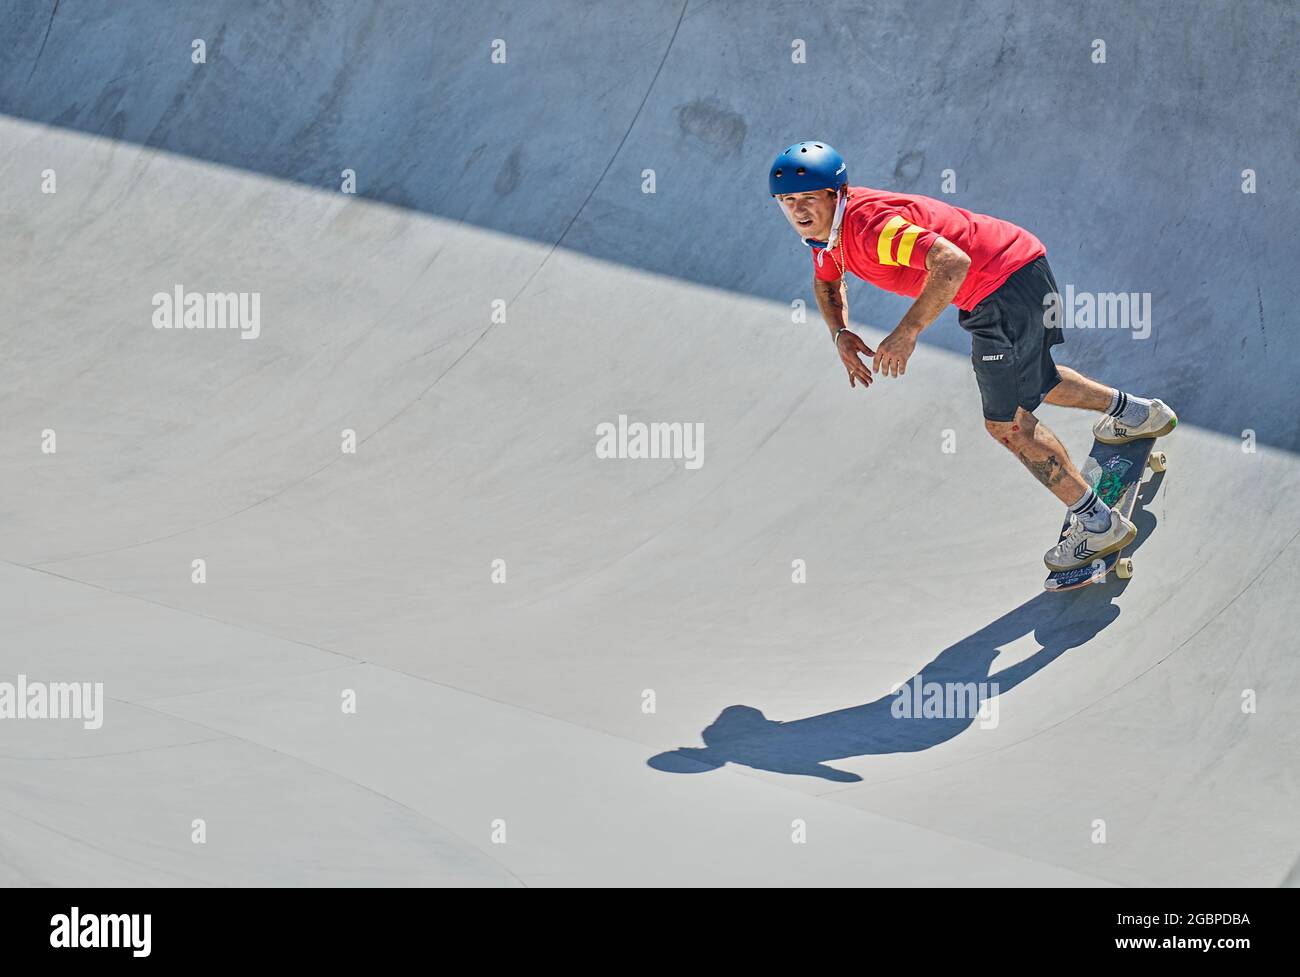 August 5, 2021: Jaime Mateu during men's park skateboard at the Olympics at  Ariake Urban Park, Tokyo, Japan. Kim Price/CSM Stock Photo - Alamy